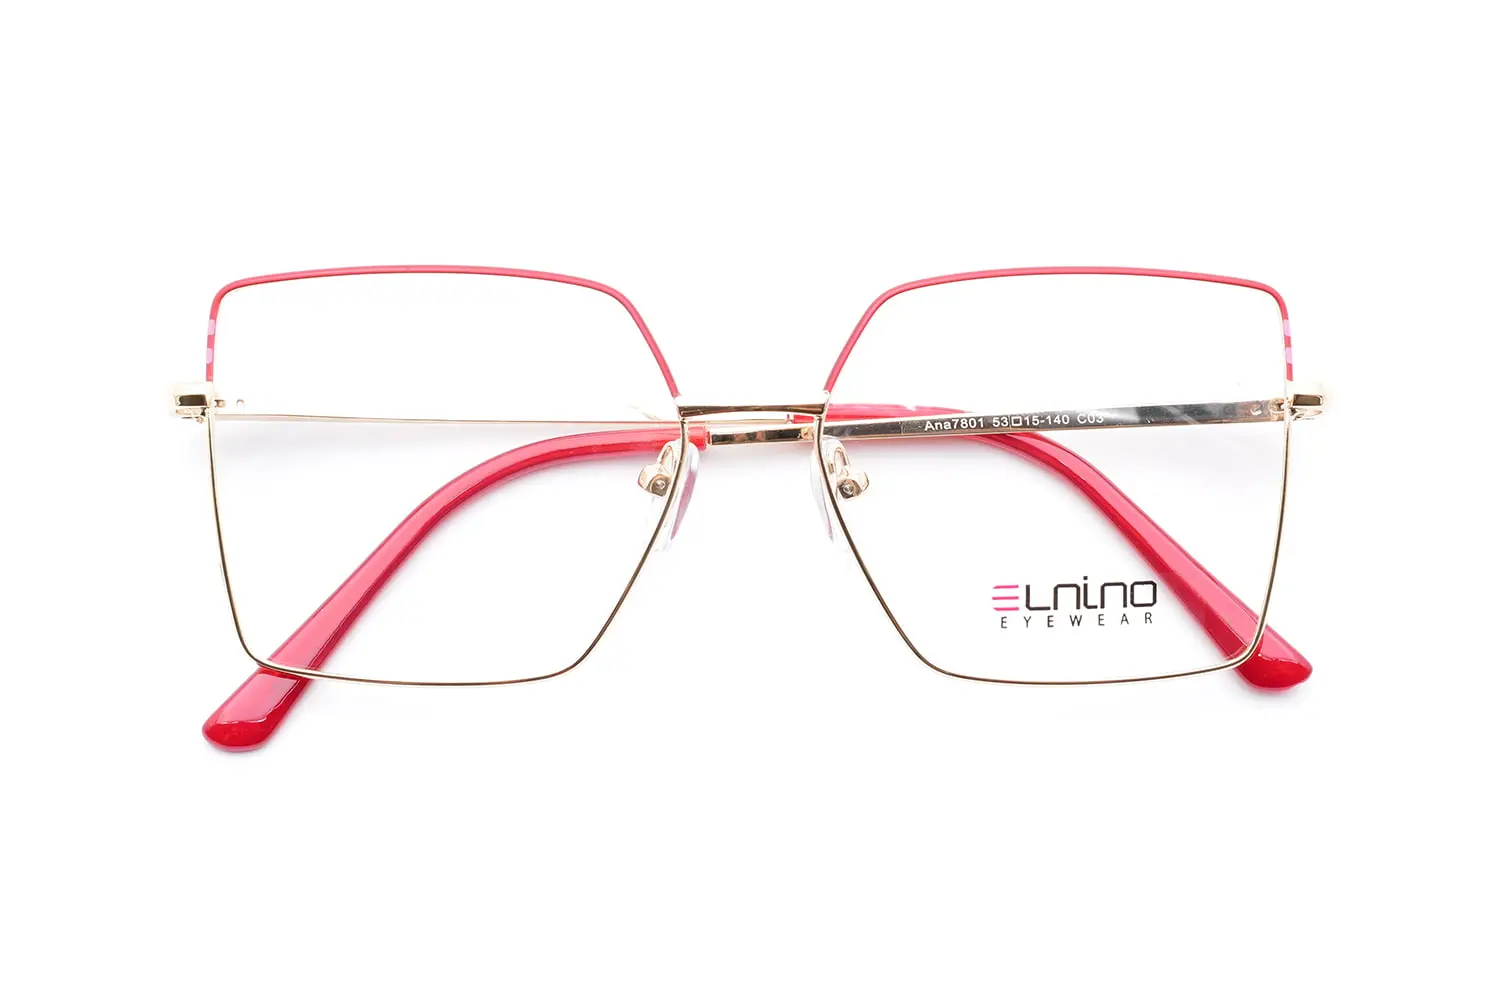 ویژگی های عینک طبی زنانه Elnino ana7801 c03